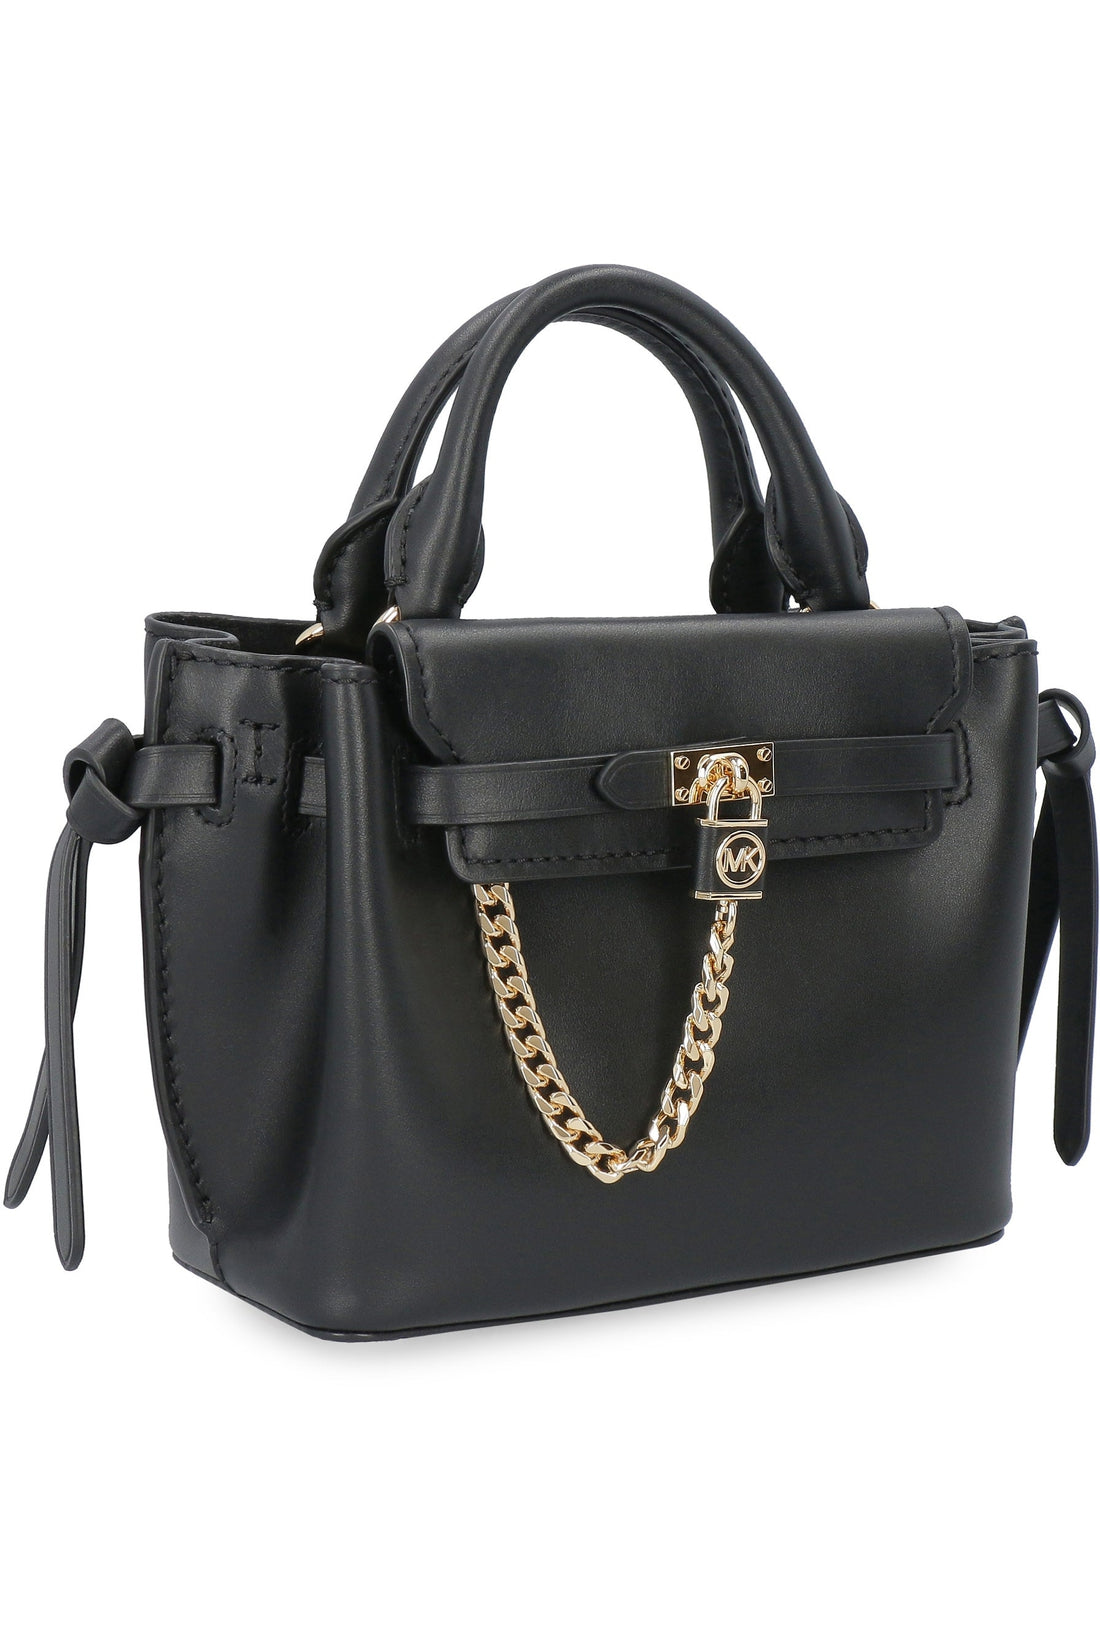 MICHAEL MICHAEL KORS-OUTLET-SALE-Hamilton Legacy small leather handbag-ARCHIVIST